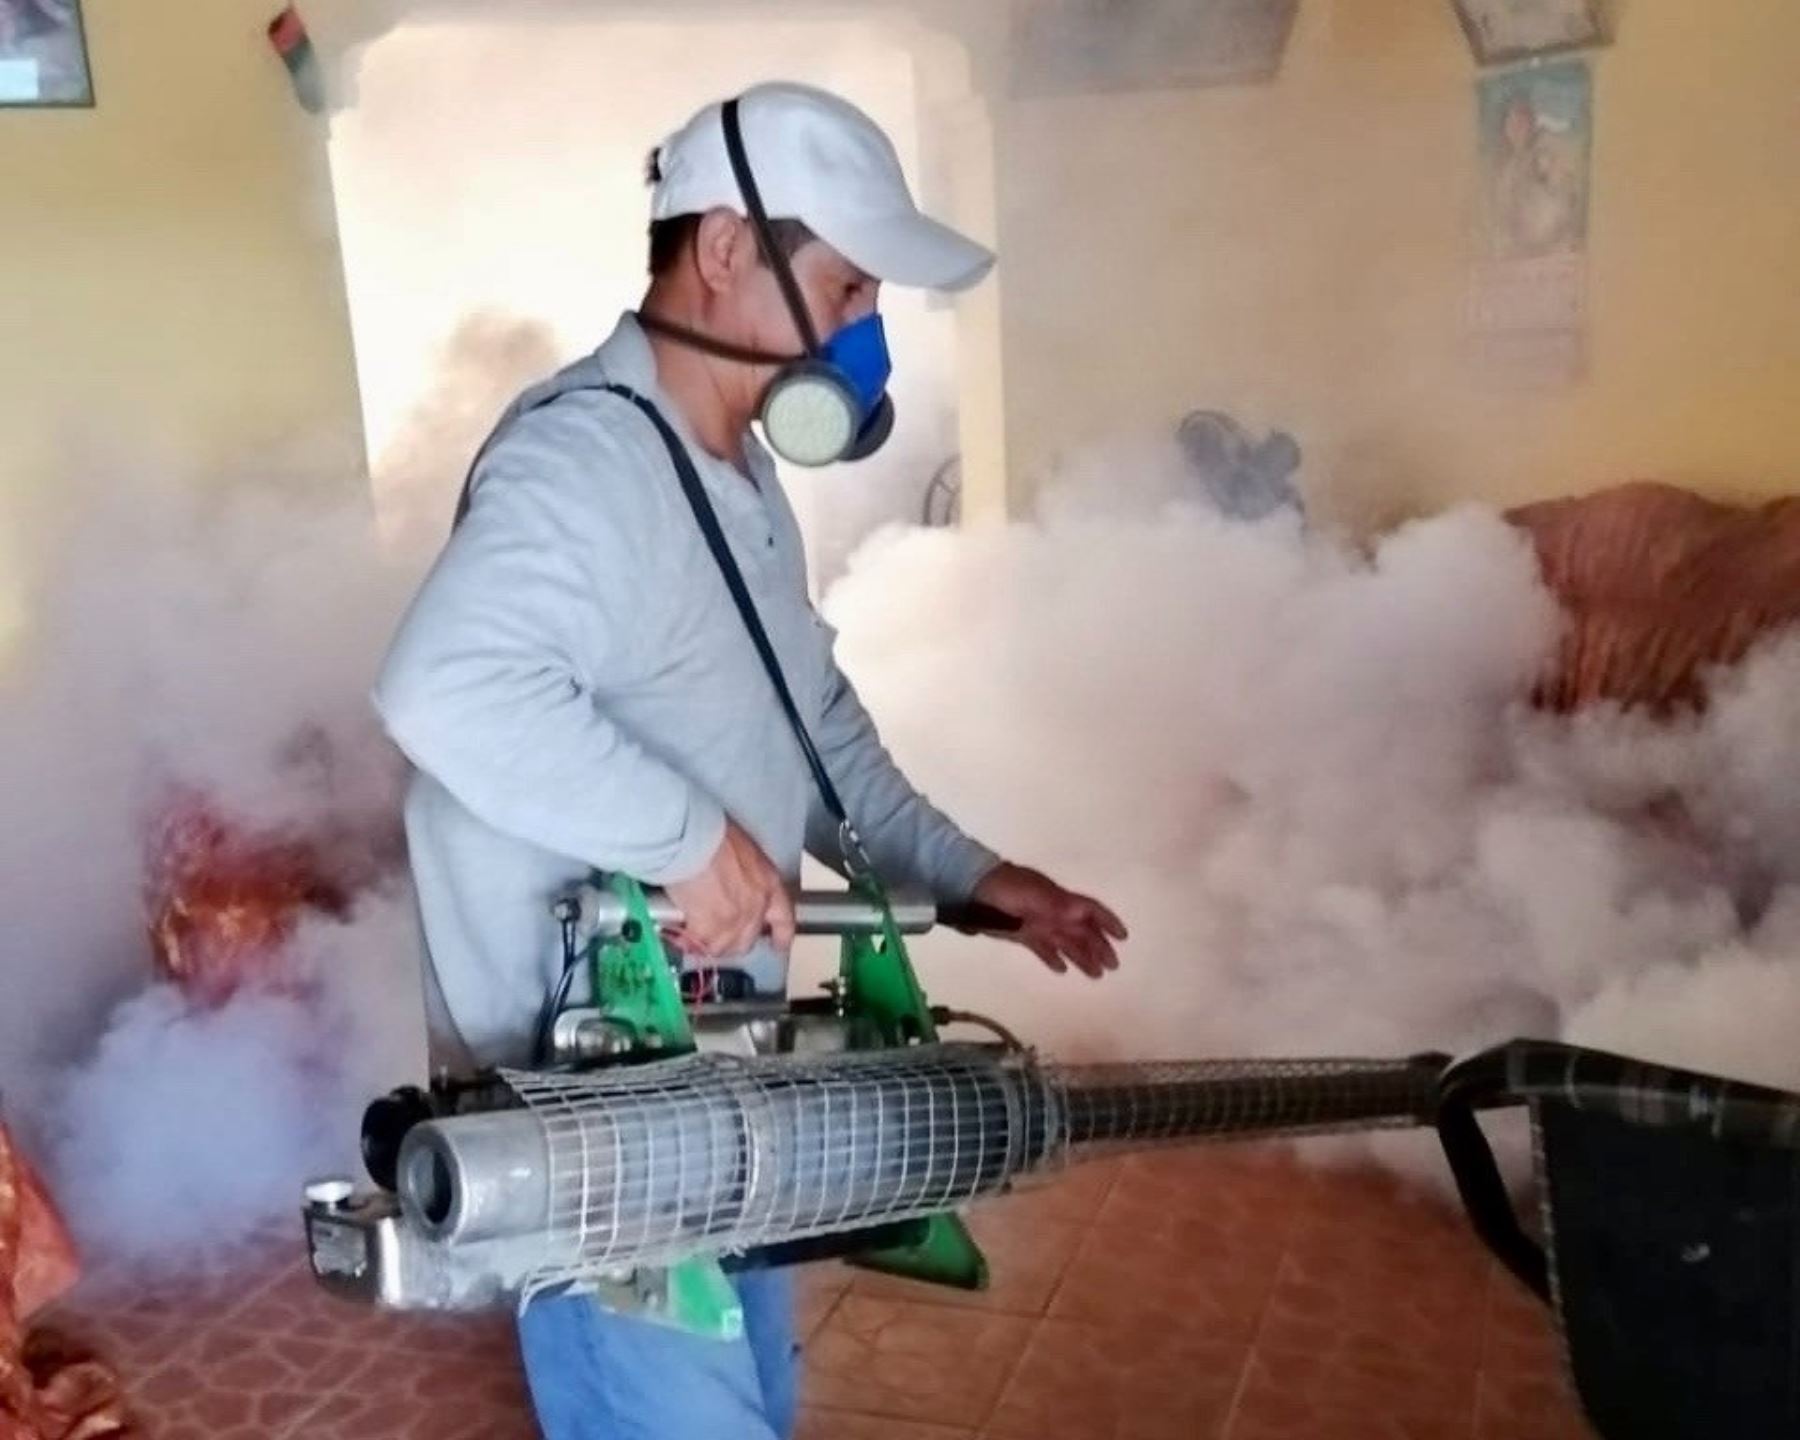 Autoridades de Salud y de Educación de Huánuco suspendieron las clases en un colegio de Puerto Súngaro debido a la intoxicación de 29 escolares, tras una fumigación para prevenir el dengue realizada en dicho local. Foto: ANDINA/difusión.